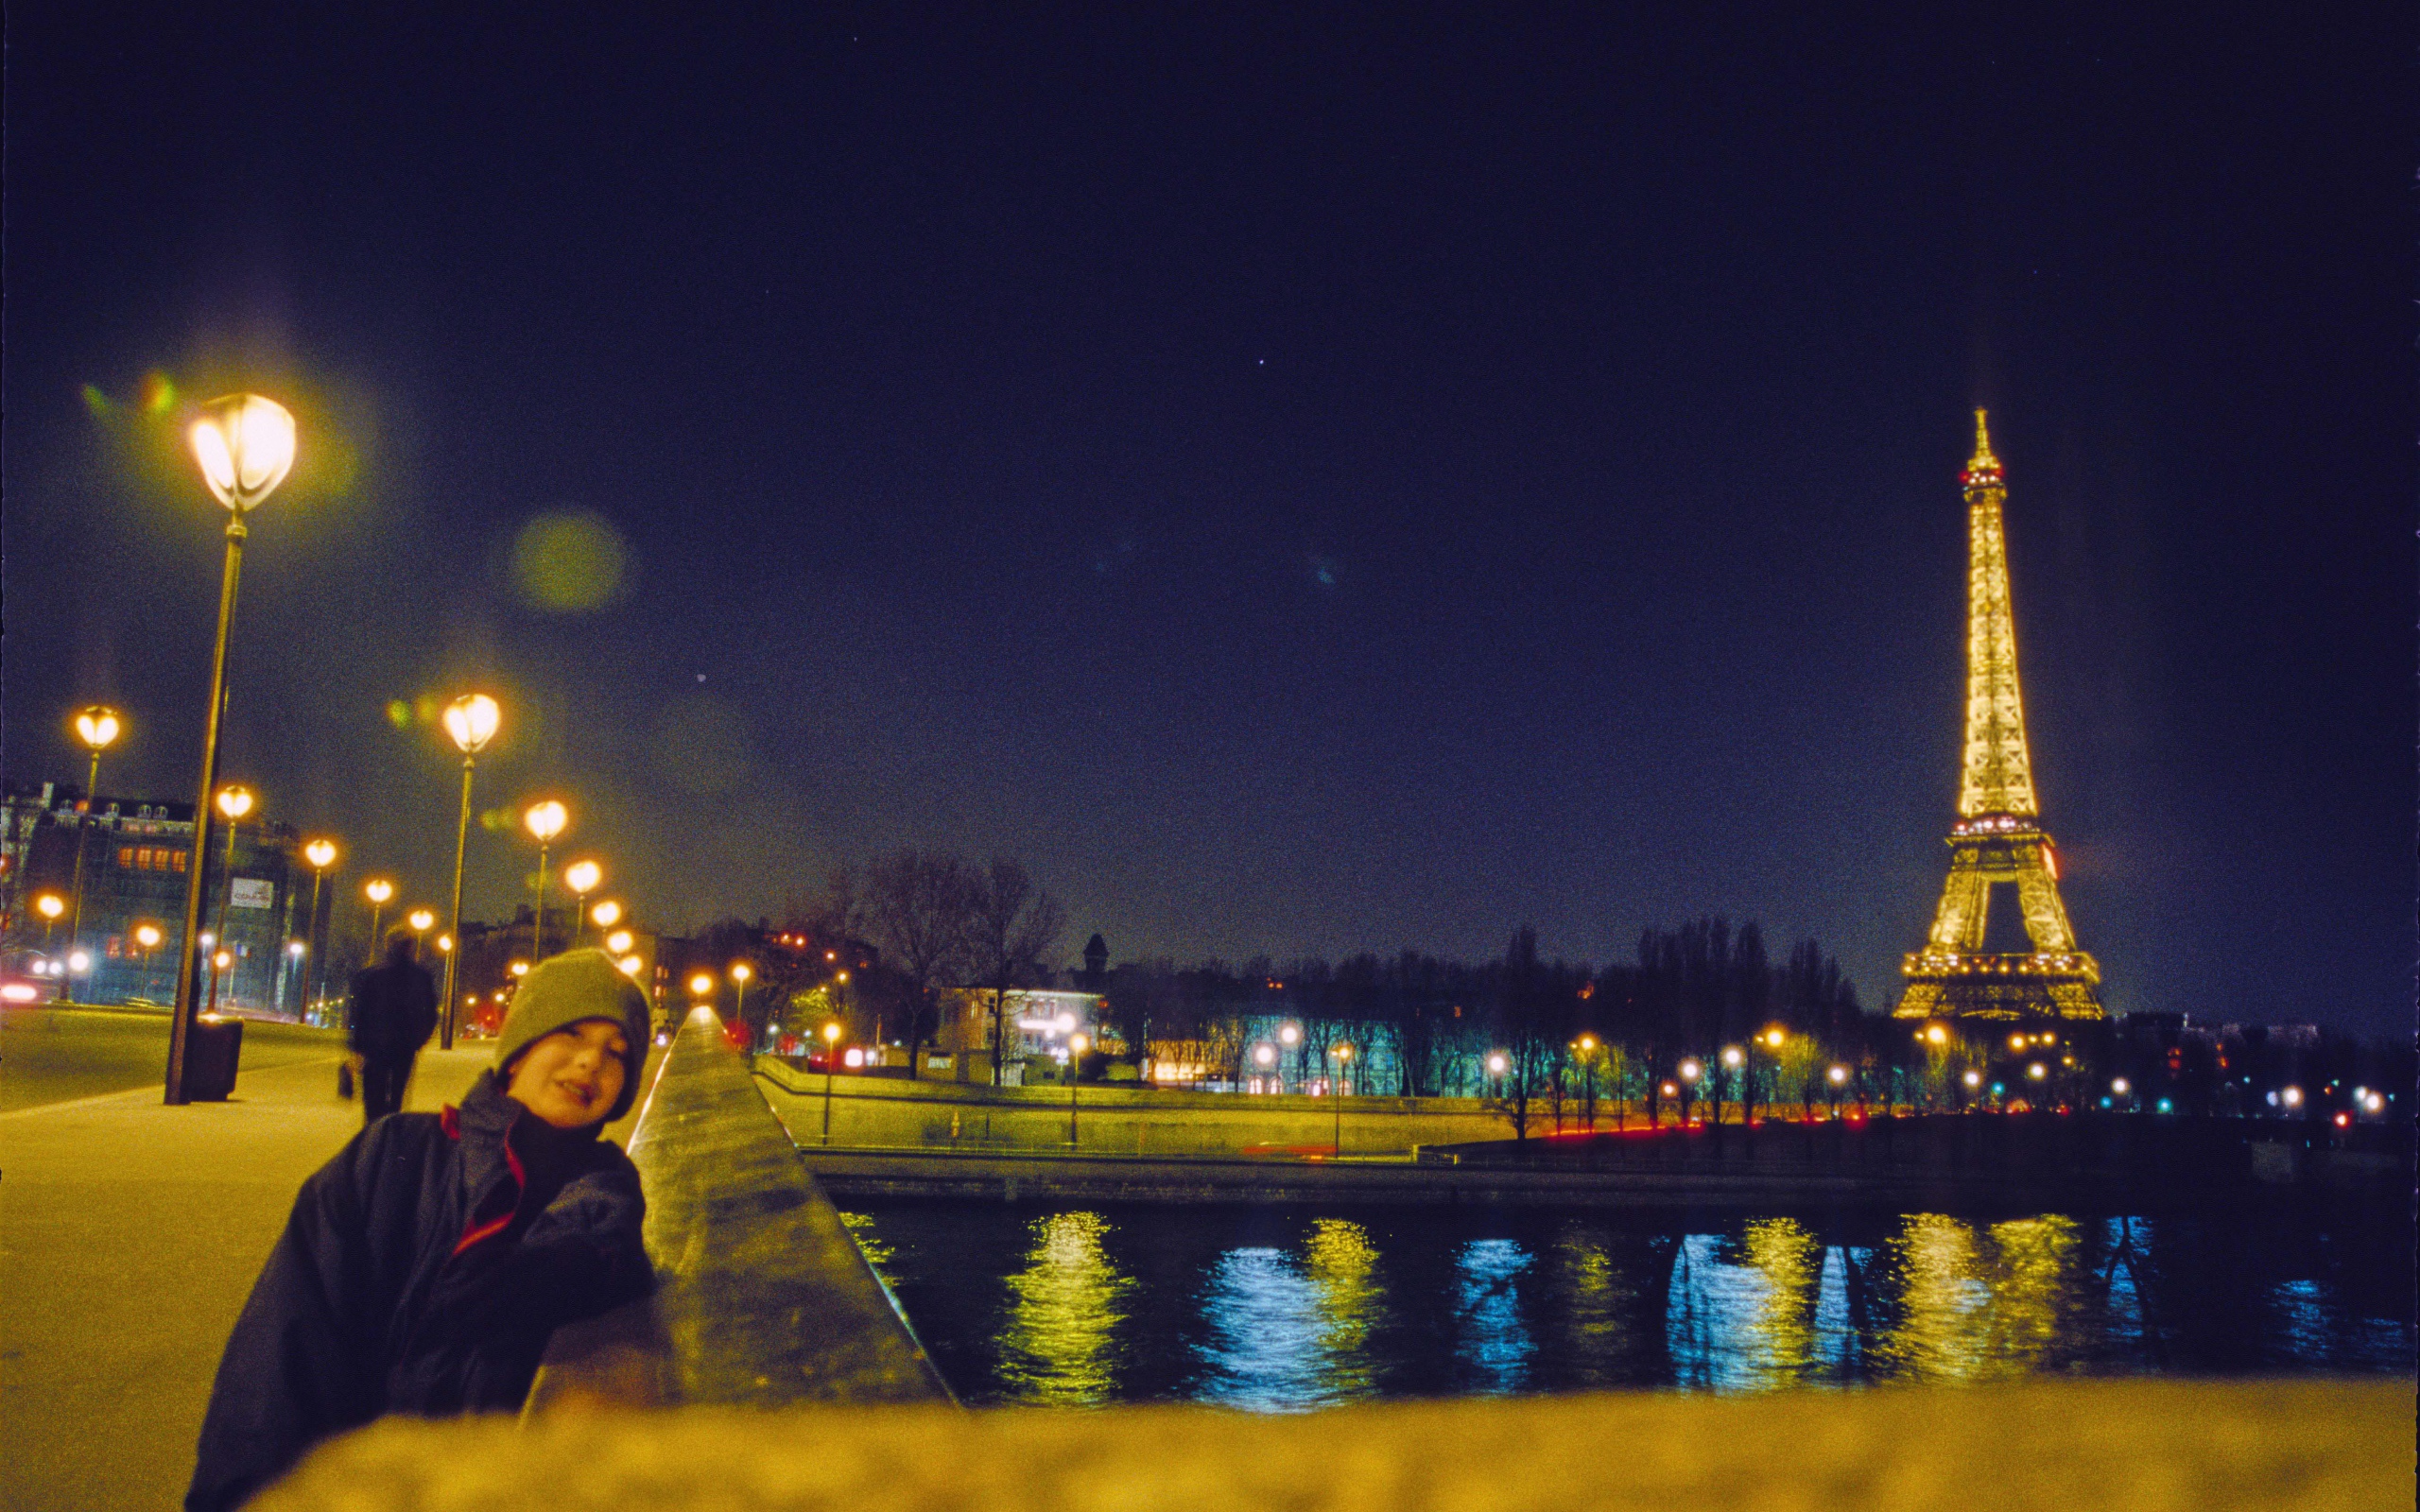 Ребёнок и Эйфелева башня, ночное фото